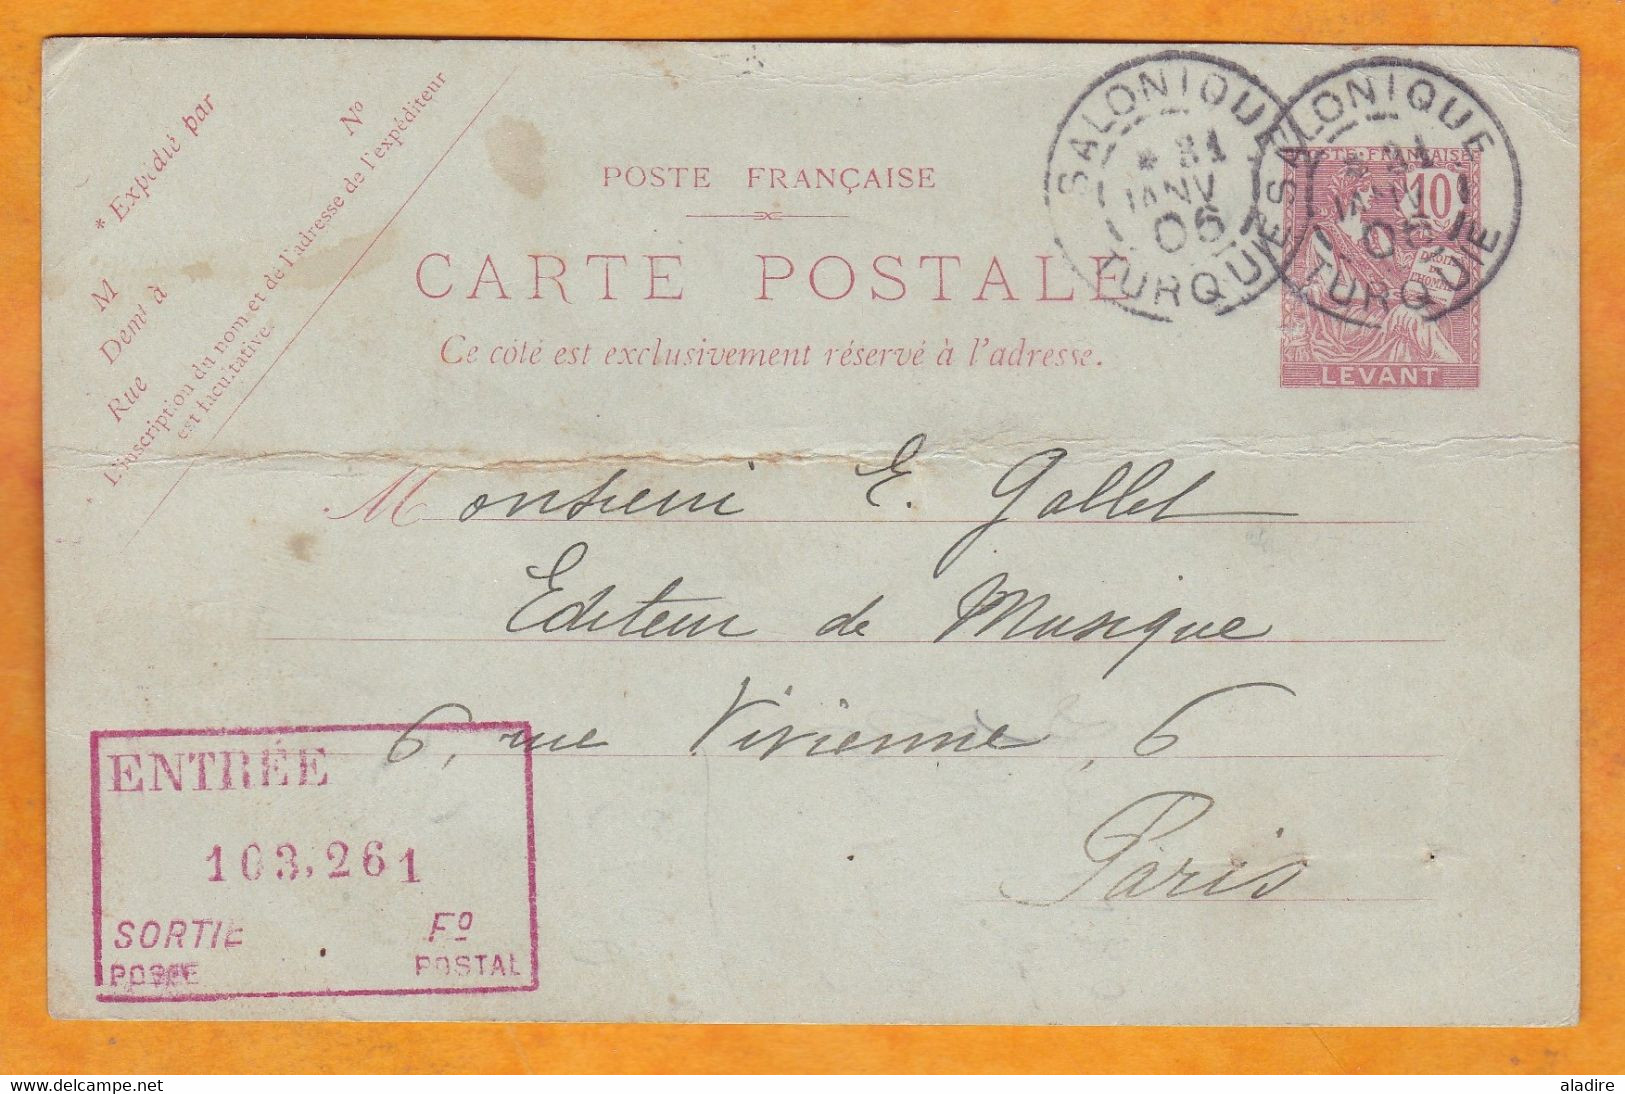 1906 - Entier CP Mouchon 10 Centimes Mouchon Levant De Salonique Vers  Paris - Daguin - Covers & Documents